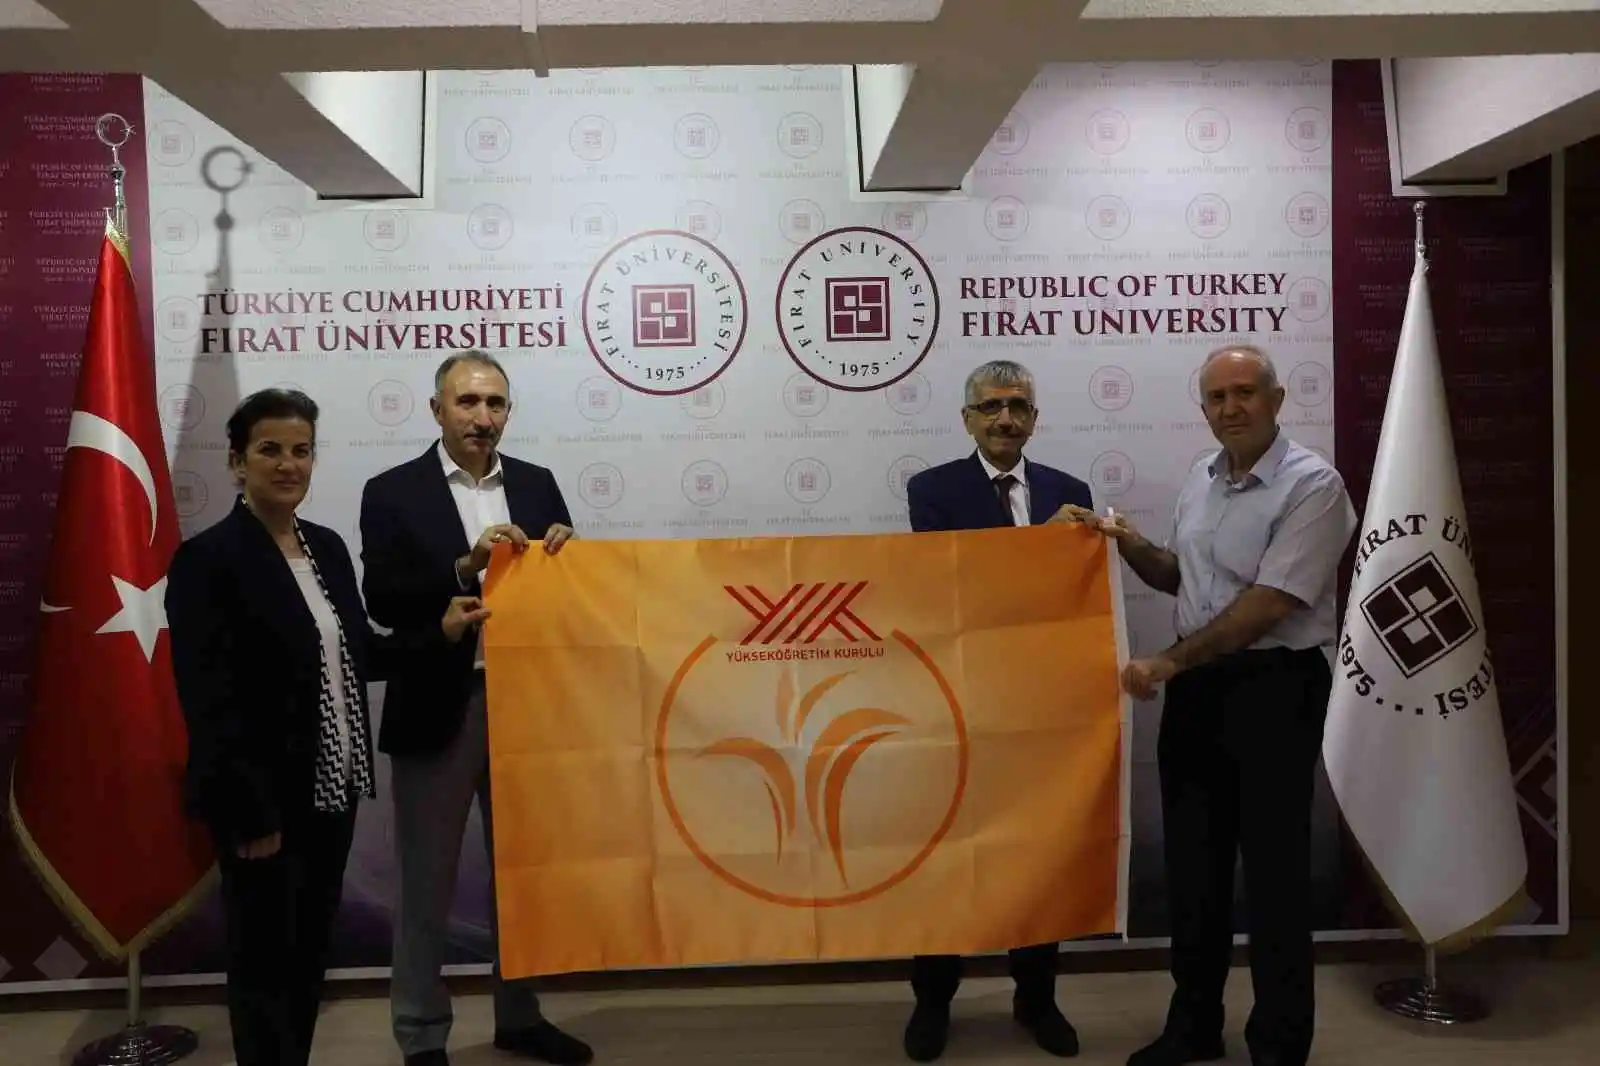 YÖK’ten Fırat Üniversitesine ‘Turuncu’ bayrak
